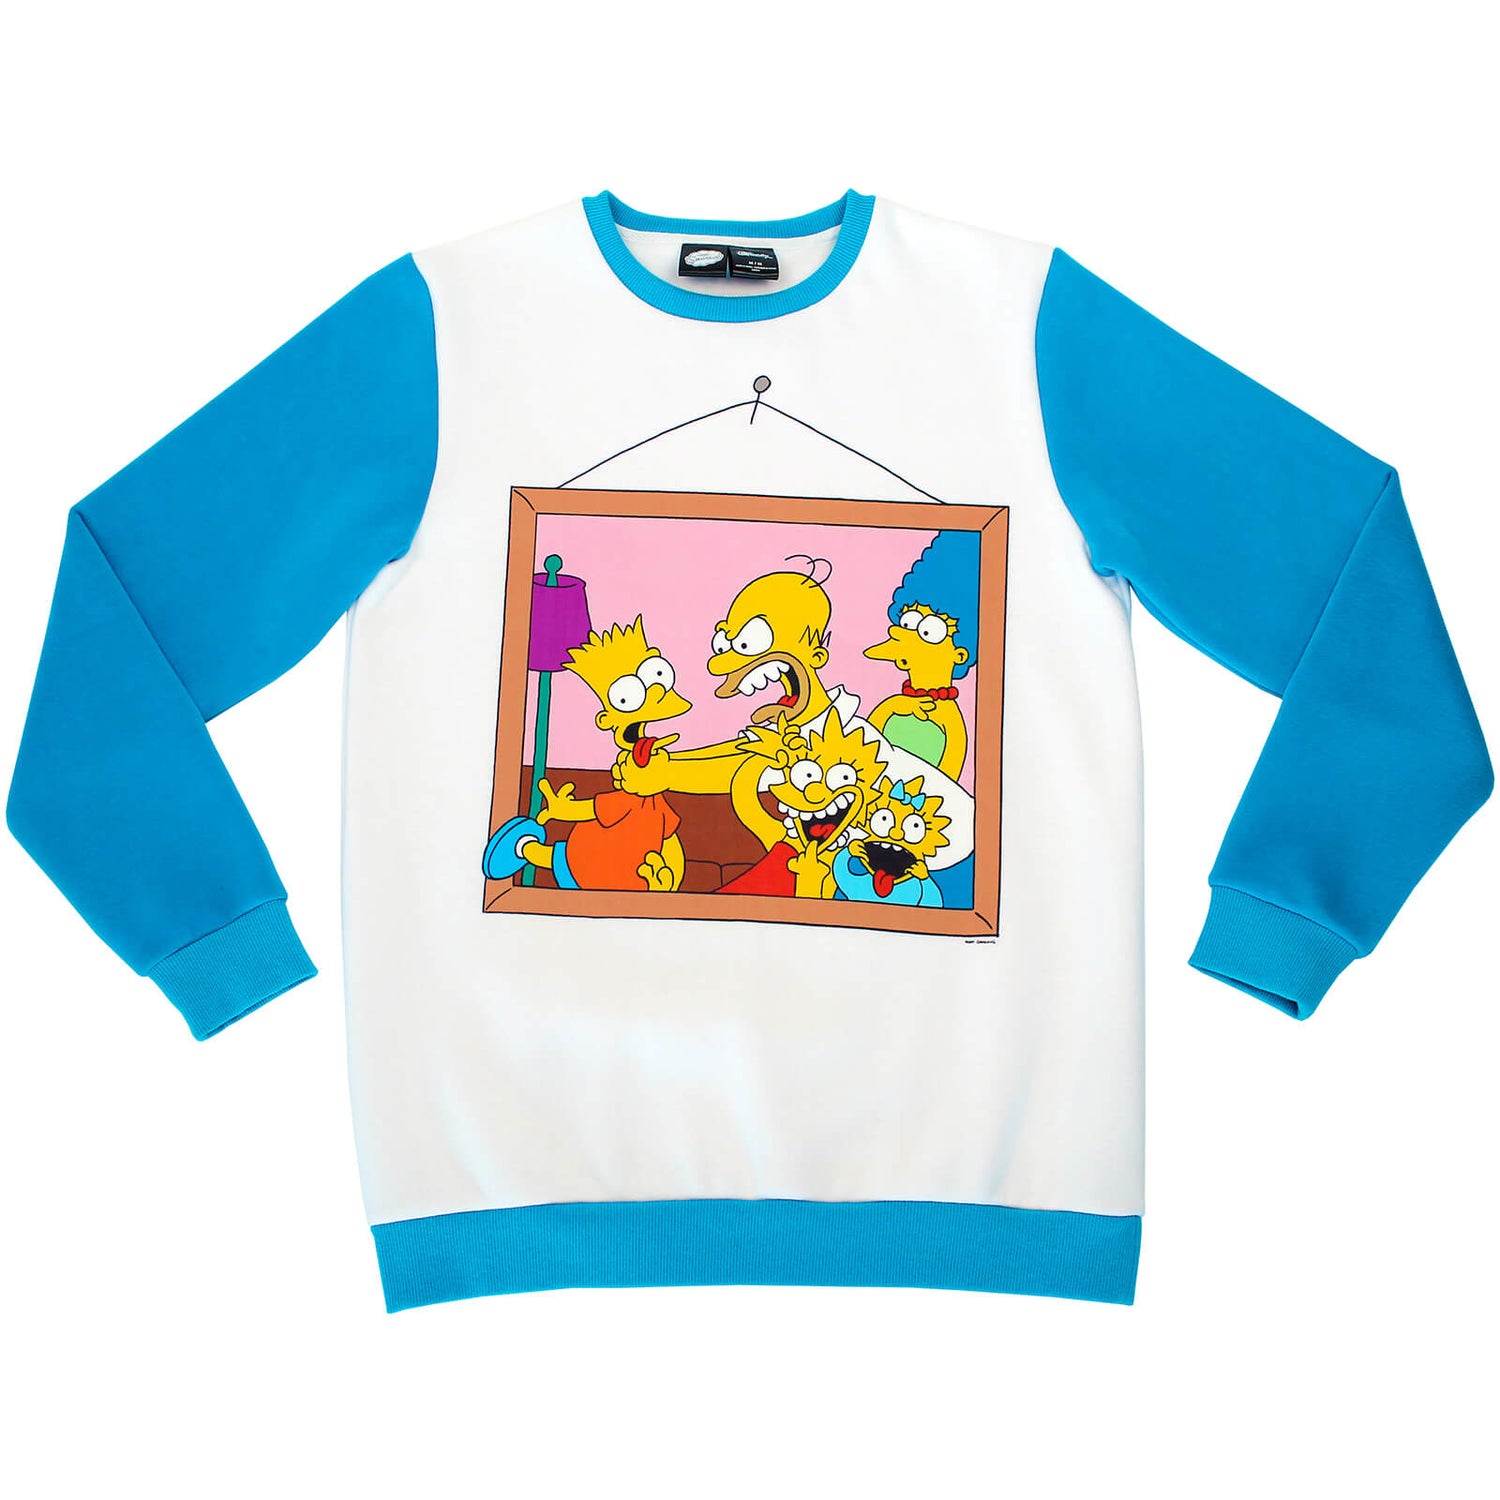 Cakeworthy x The Simpsons - Retro Crewneck Sweater